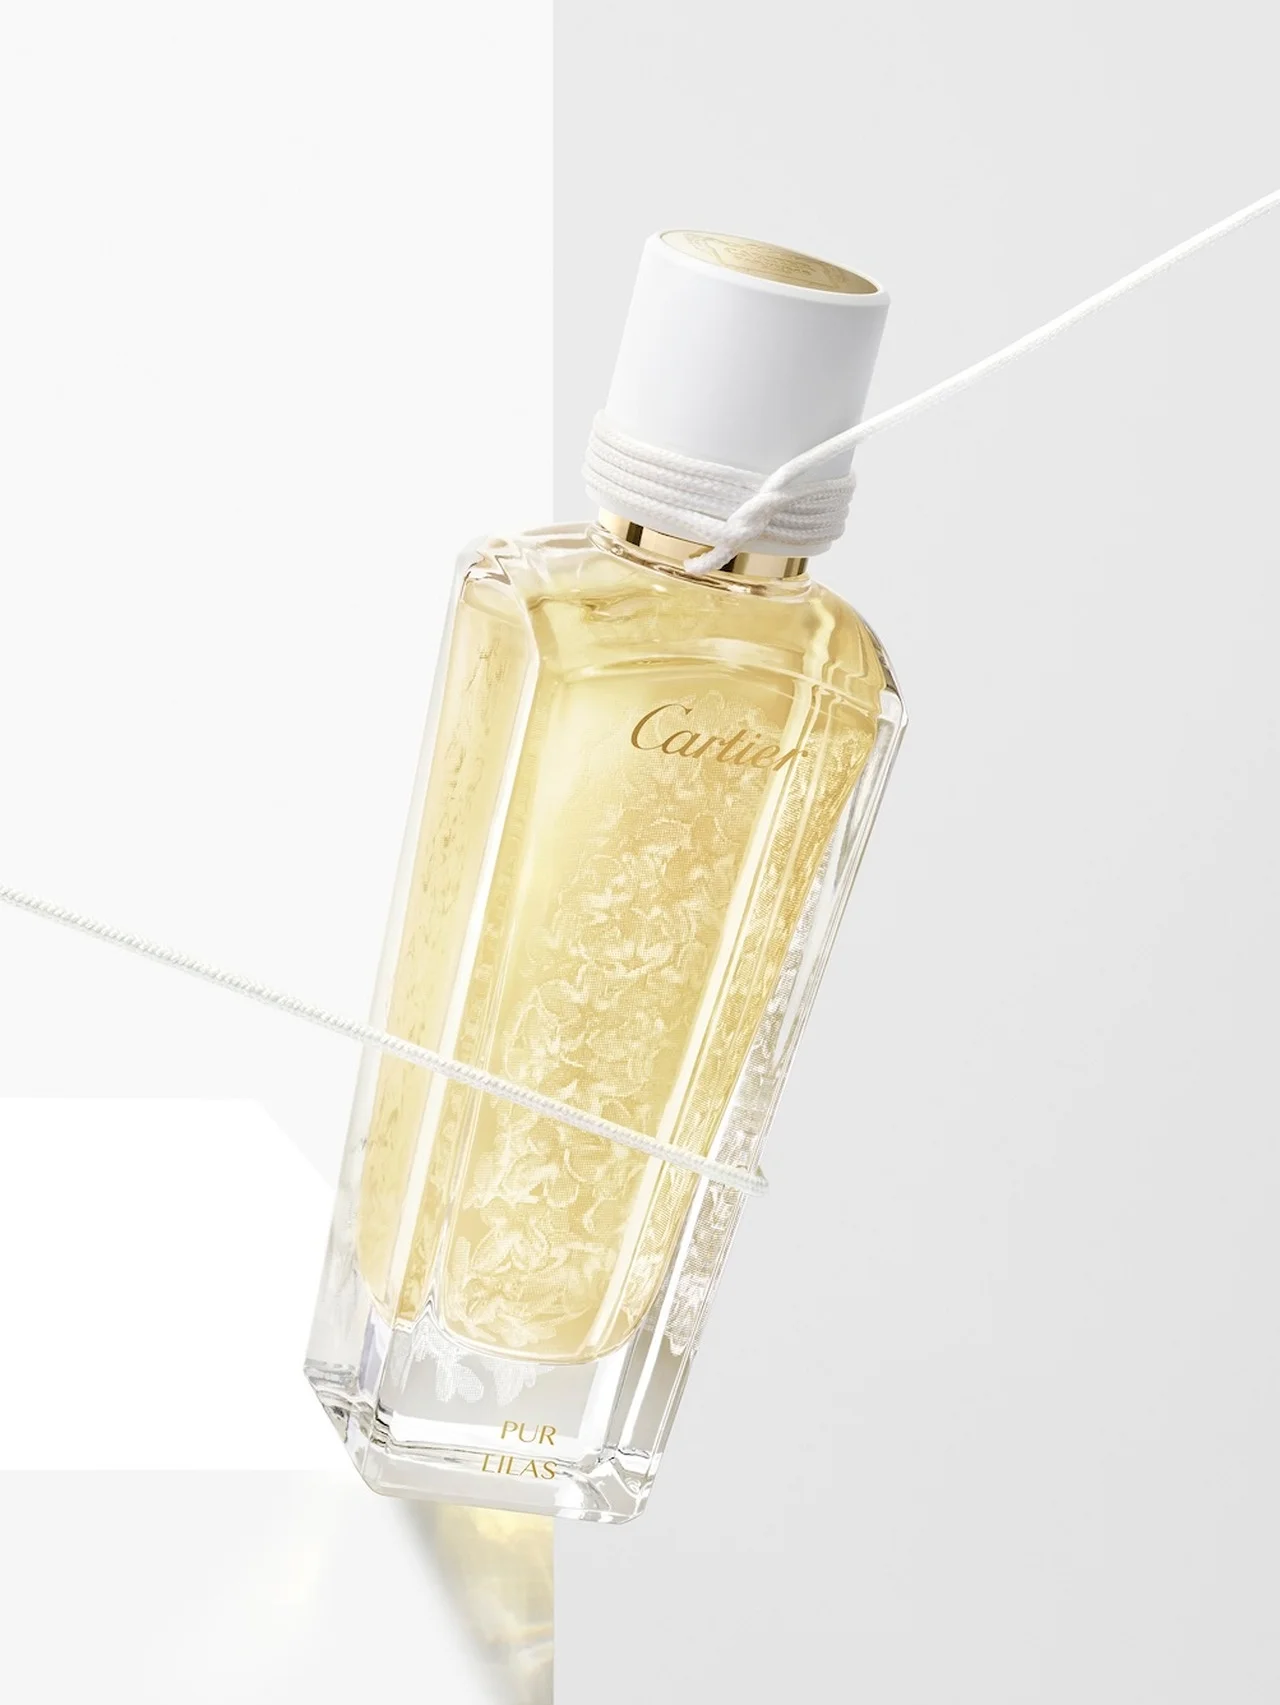 【カルティエ】最新フレグランス「ピュール リラ」。ホワイトライラックをイメージした晴れやかな香り